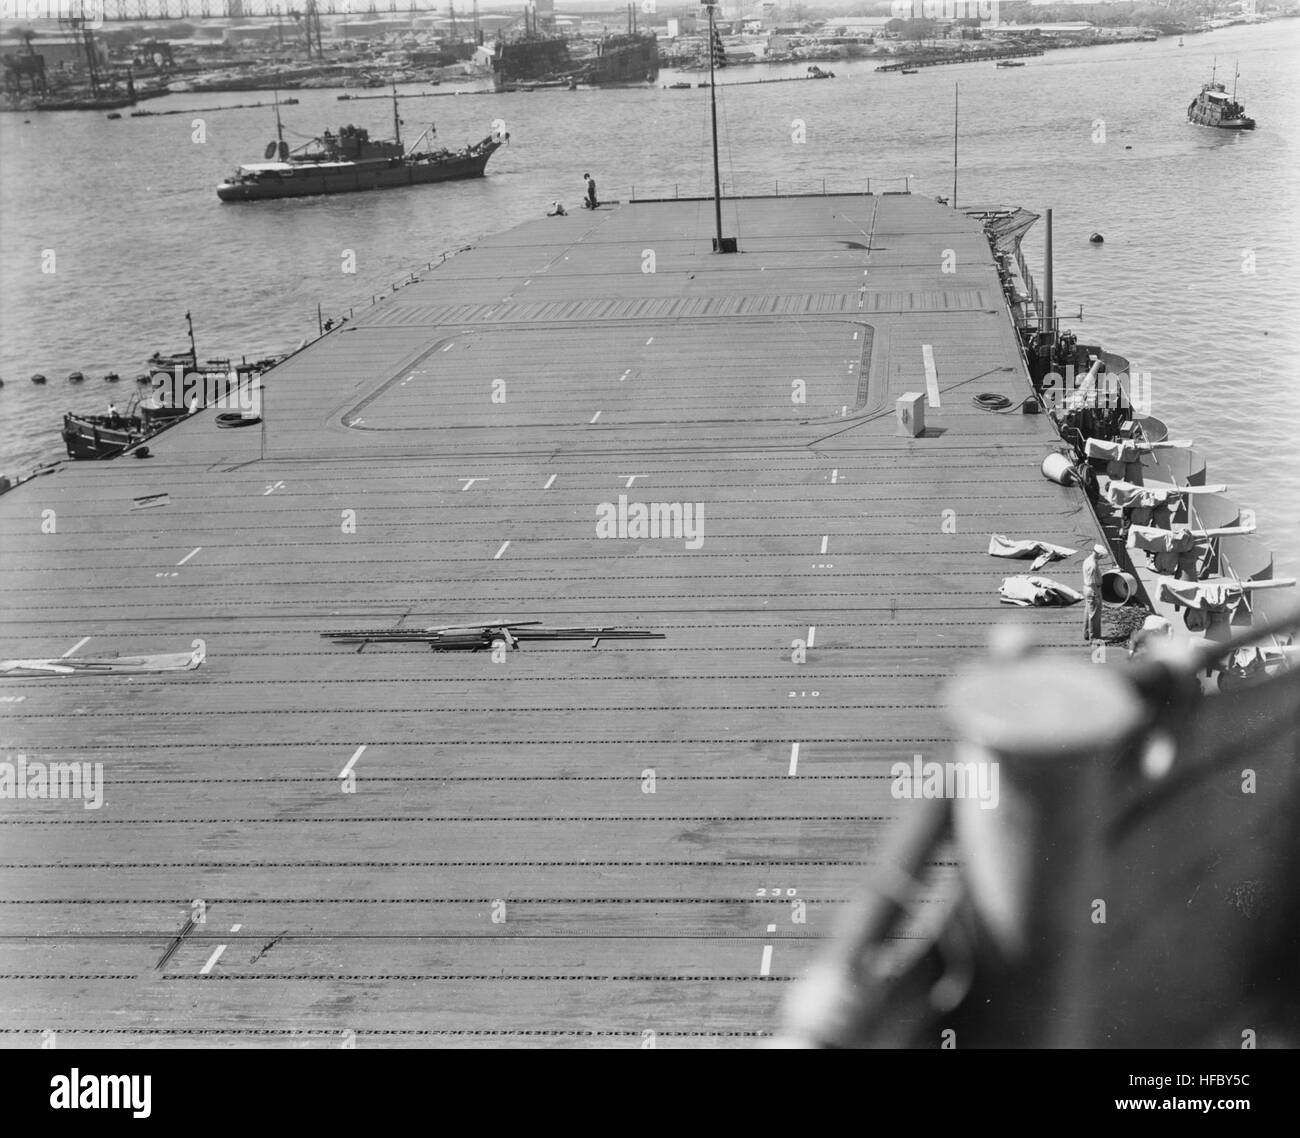 L'avant poste de pilotage de l'USS Enterprise (CV-6) en mars 1942 Banque D'Images